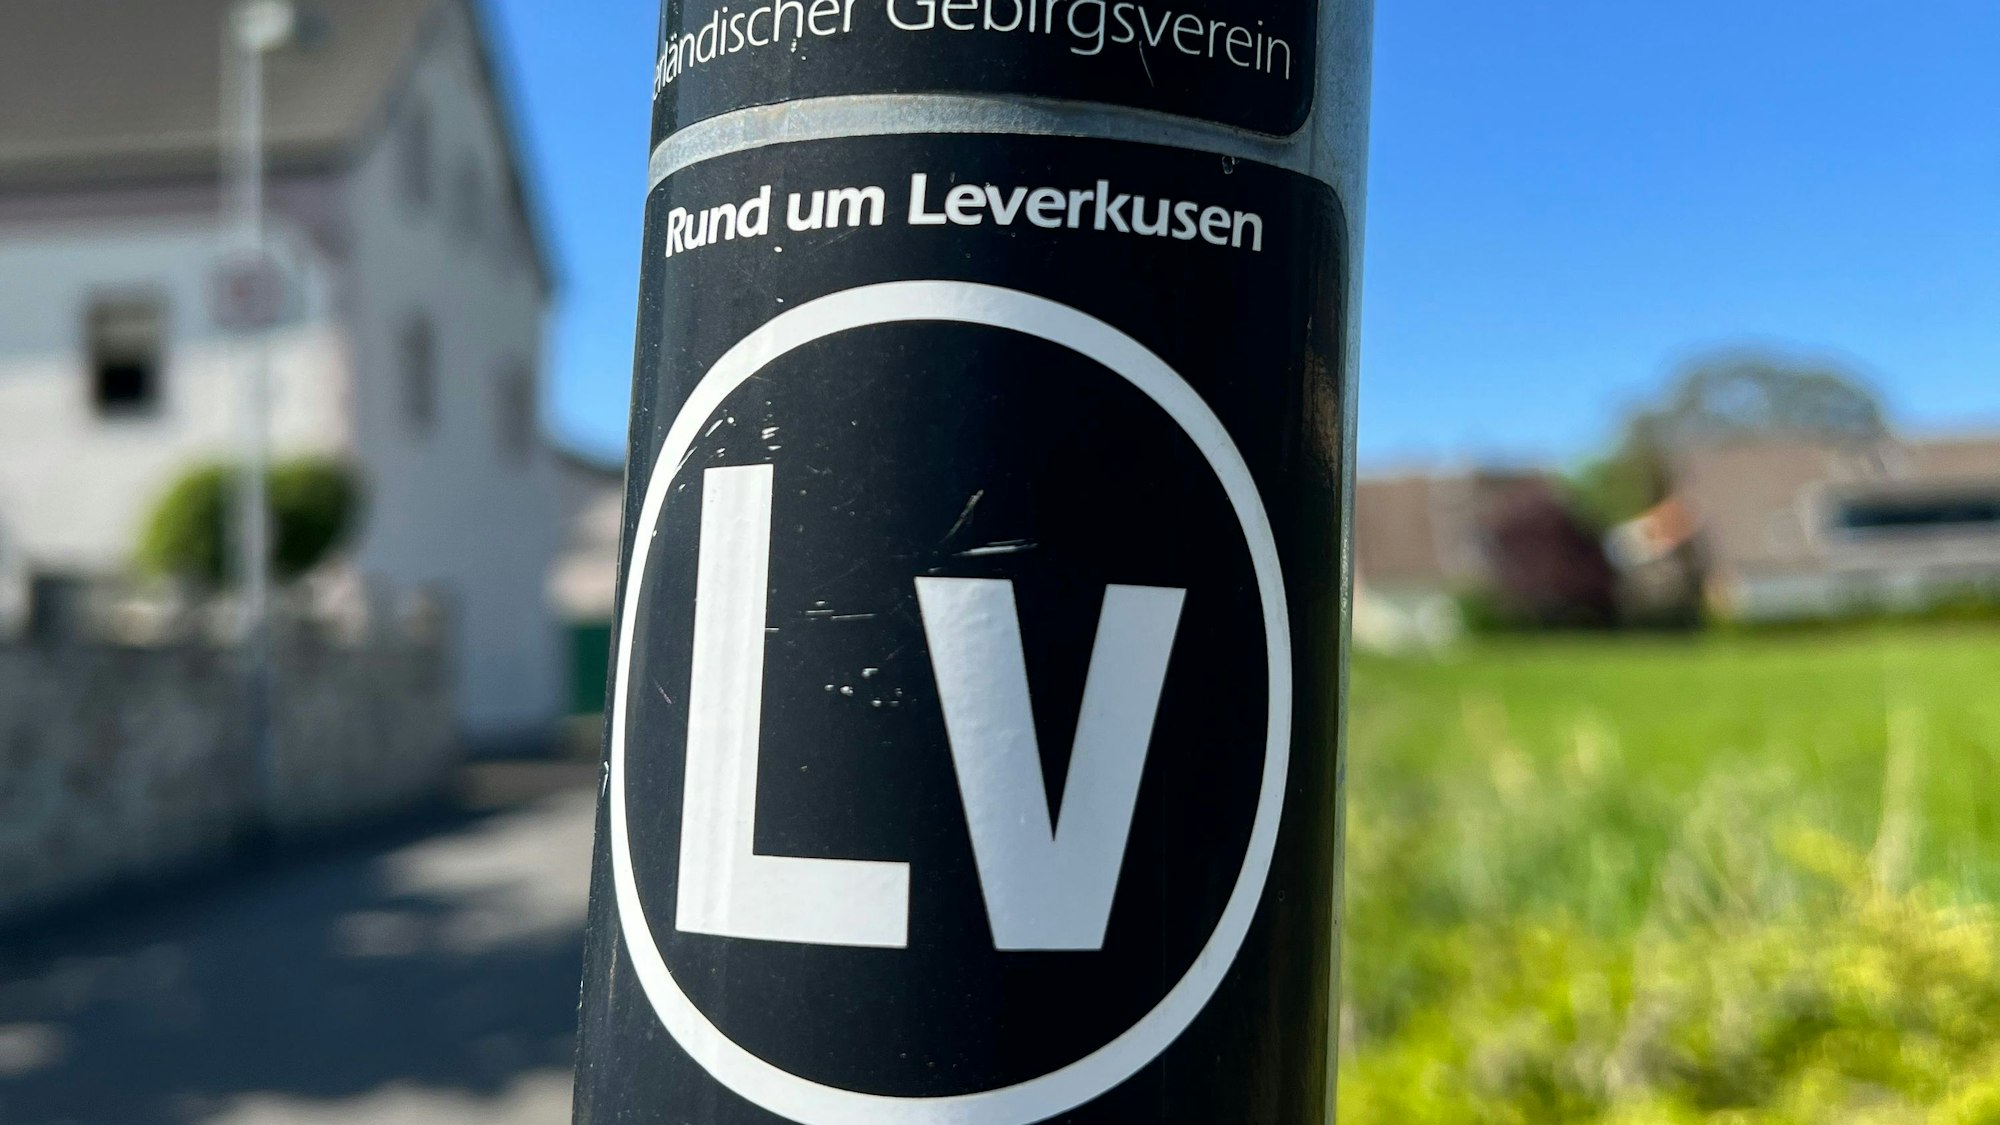 Wanderwegmarke von Rund um Leverkusen